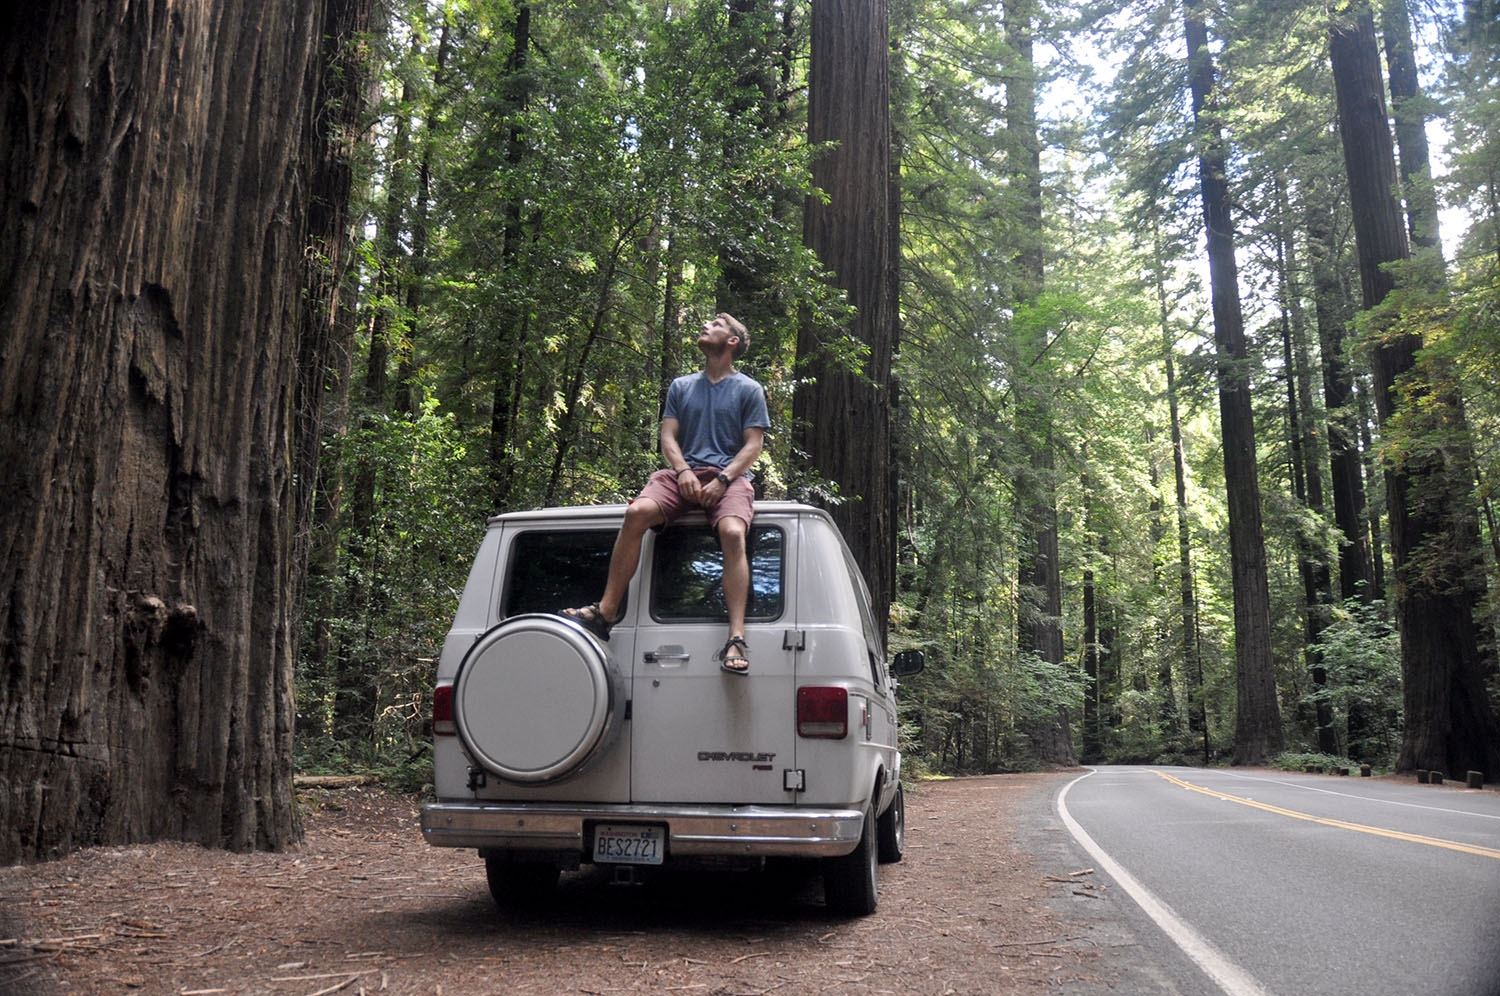 Van Life Q&A Sitting on Van in Woods